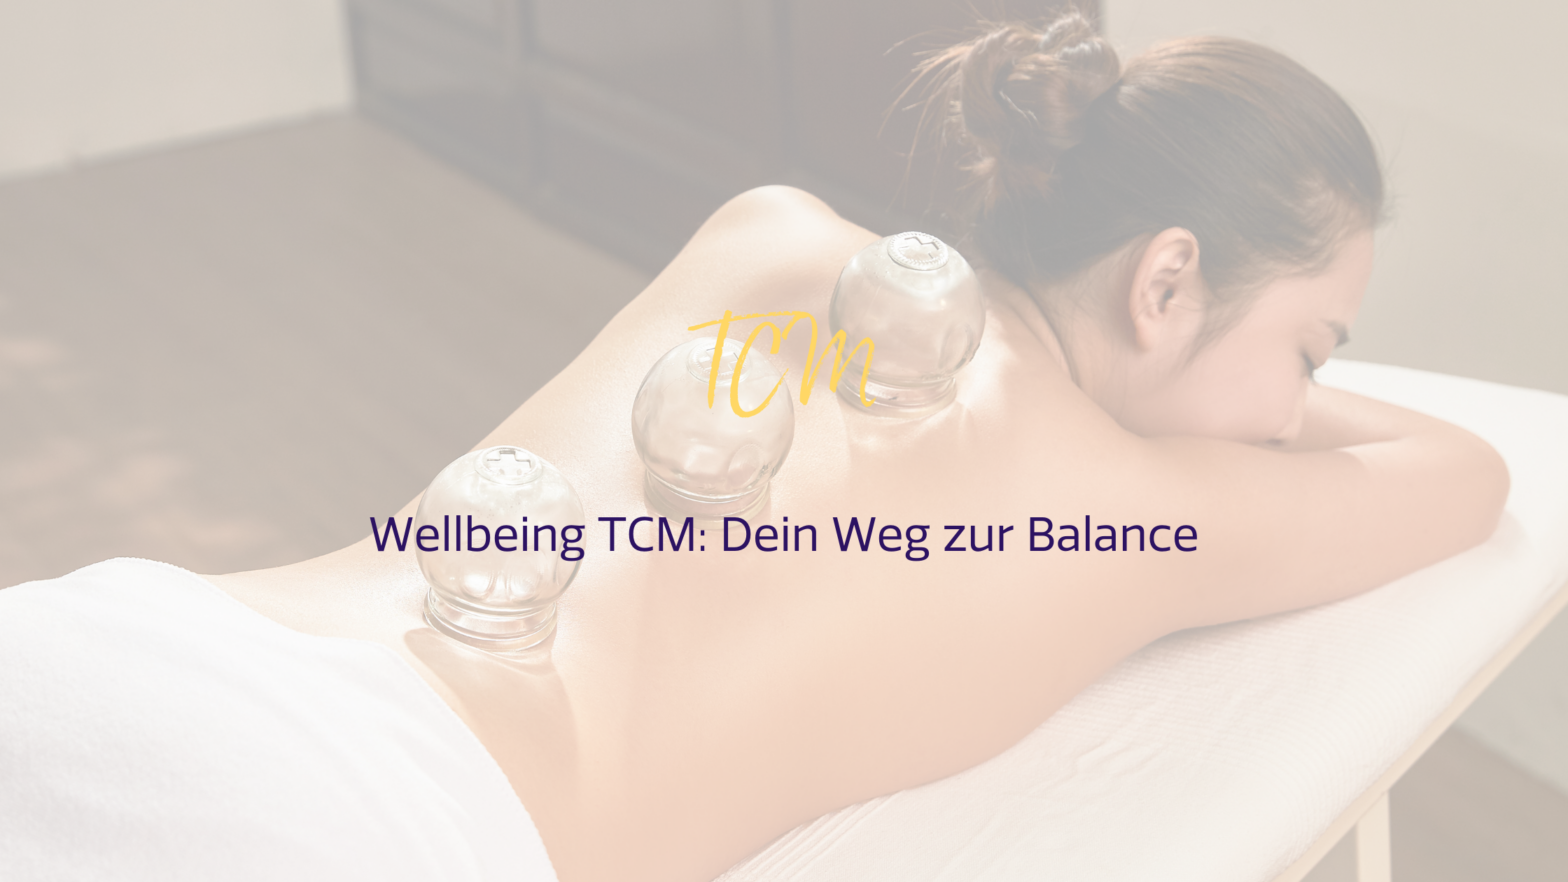 Wellbeing TCM: Dein Weg zur Balance